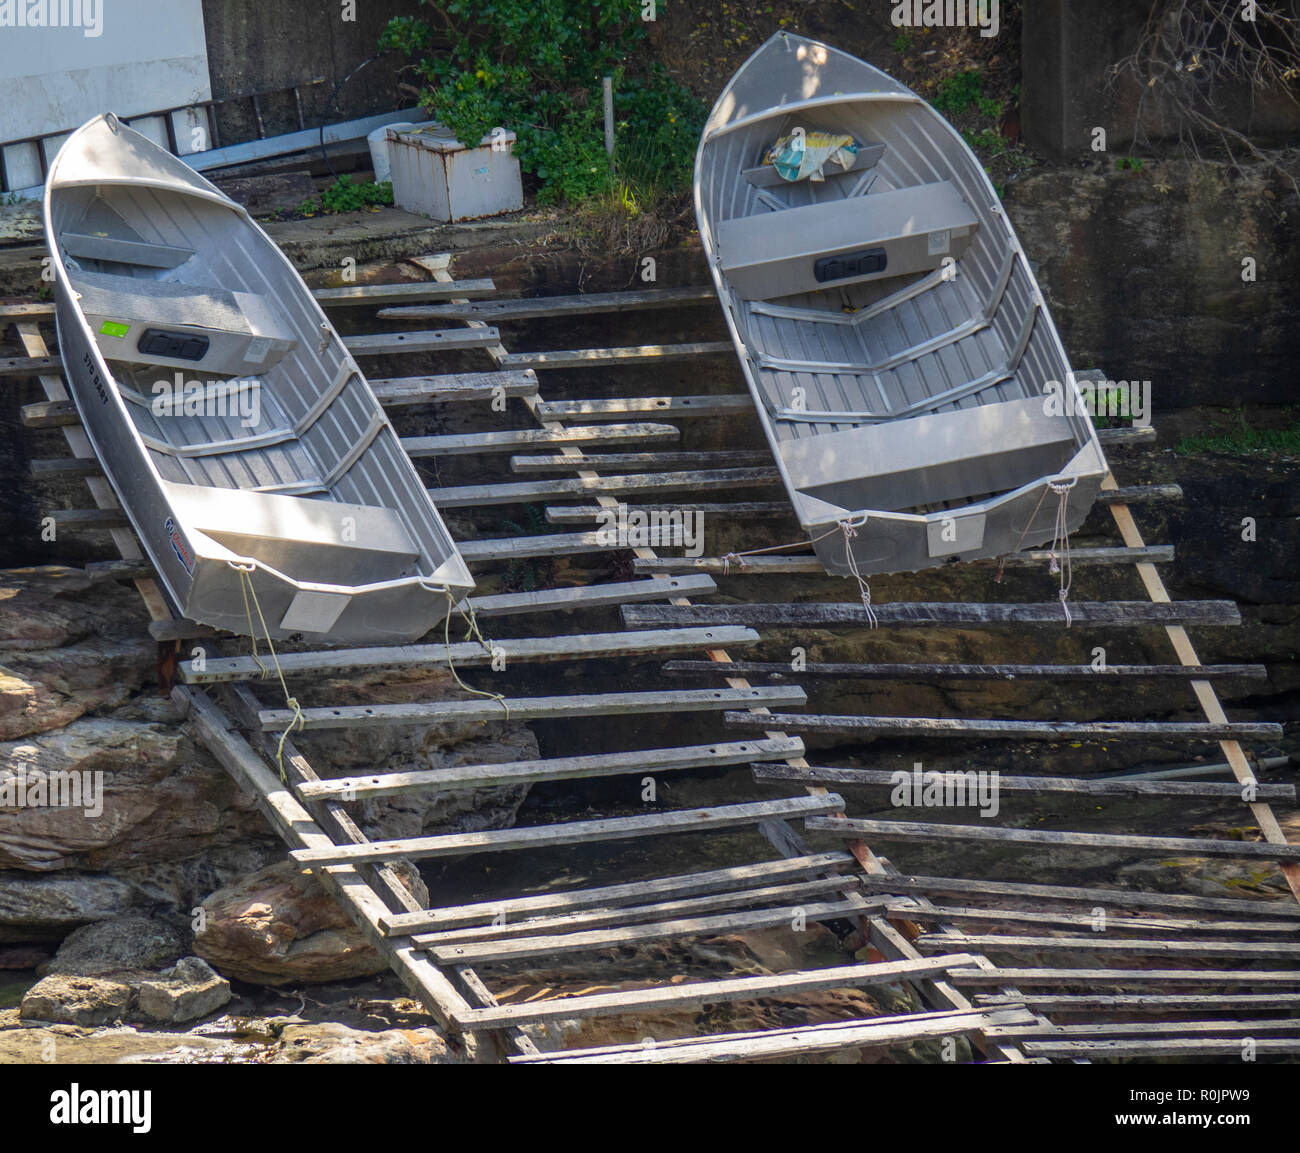 Botes de aluminio sobre bastidor de madera rampa en Gordon Bay Sydney, NSW, Australia. Foto de stock